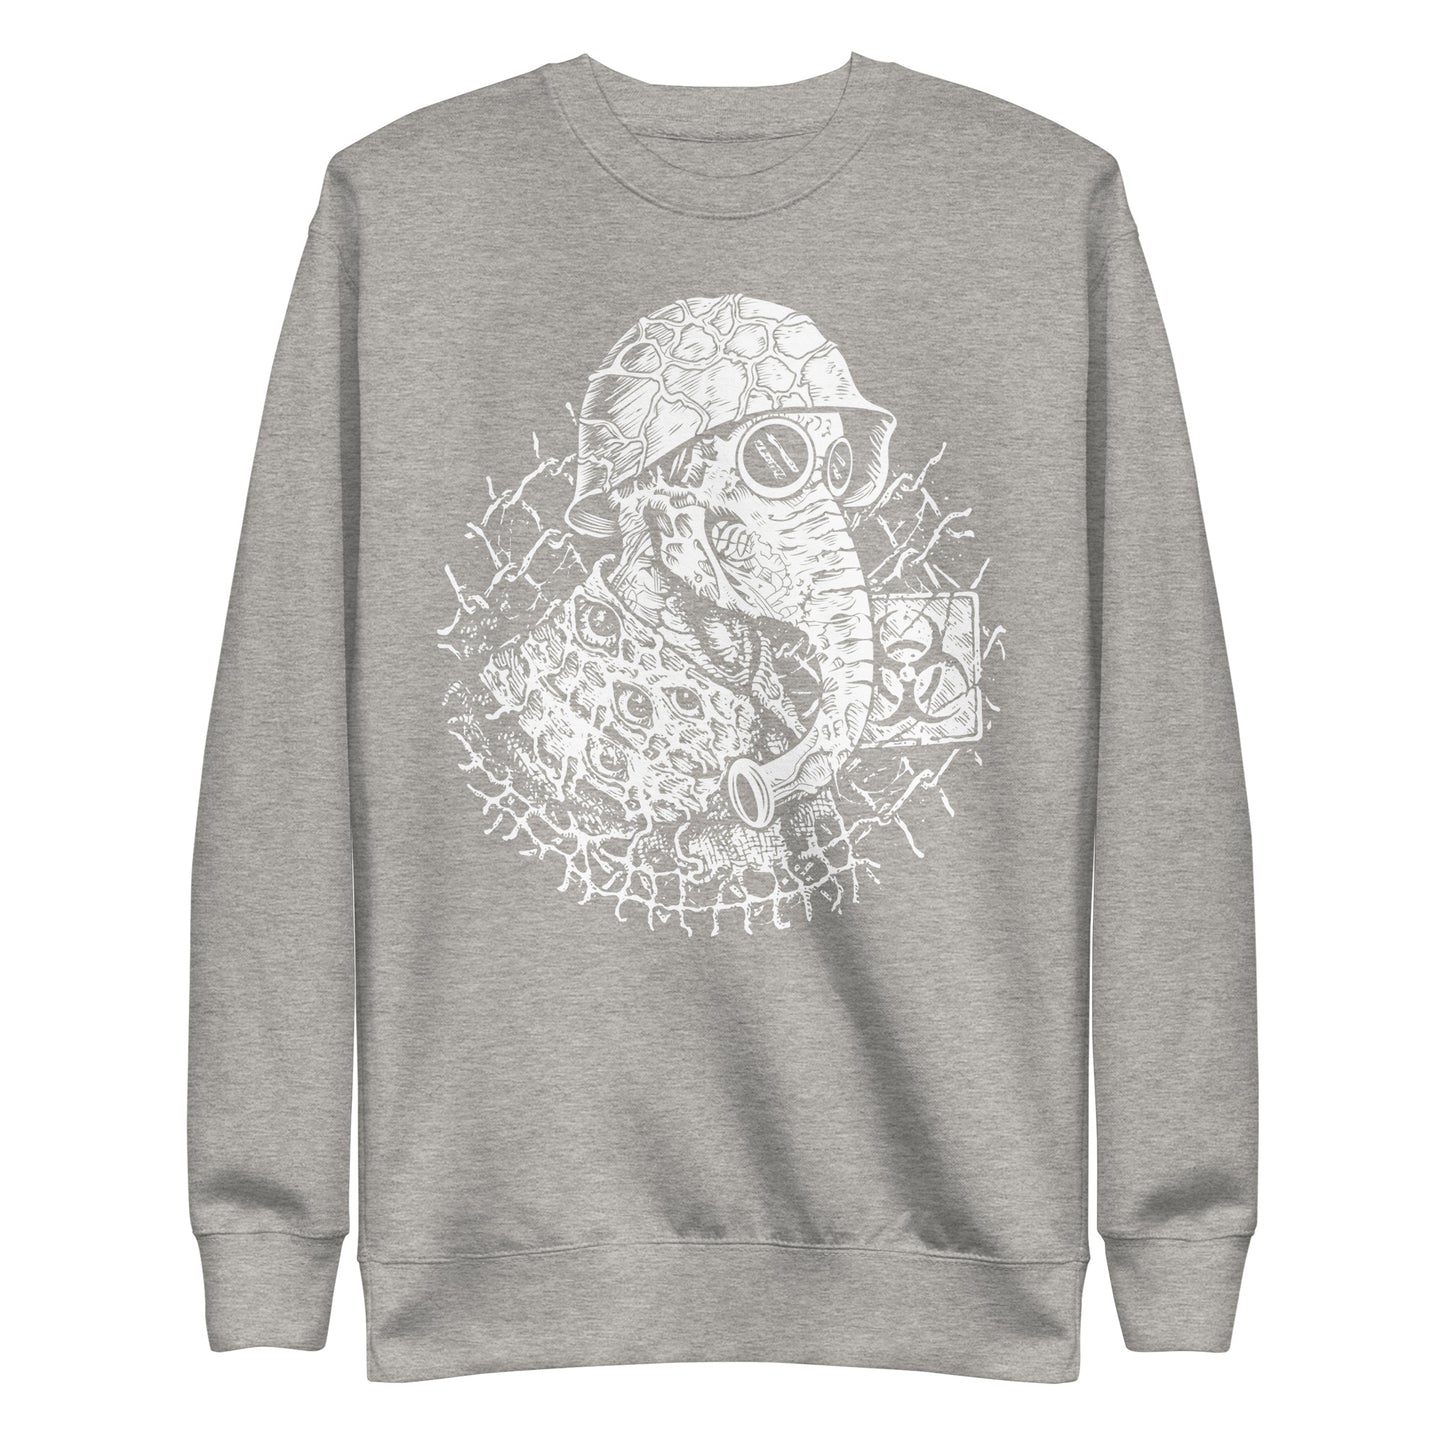 Mad Scientist - Unisex Premium Sweatshirt